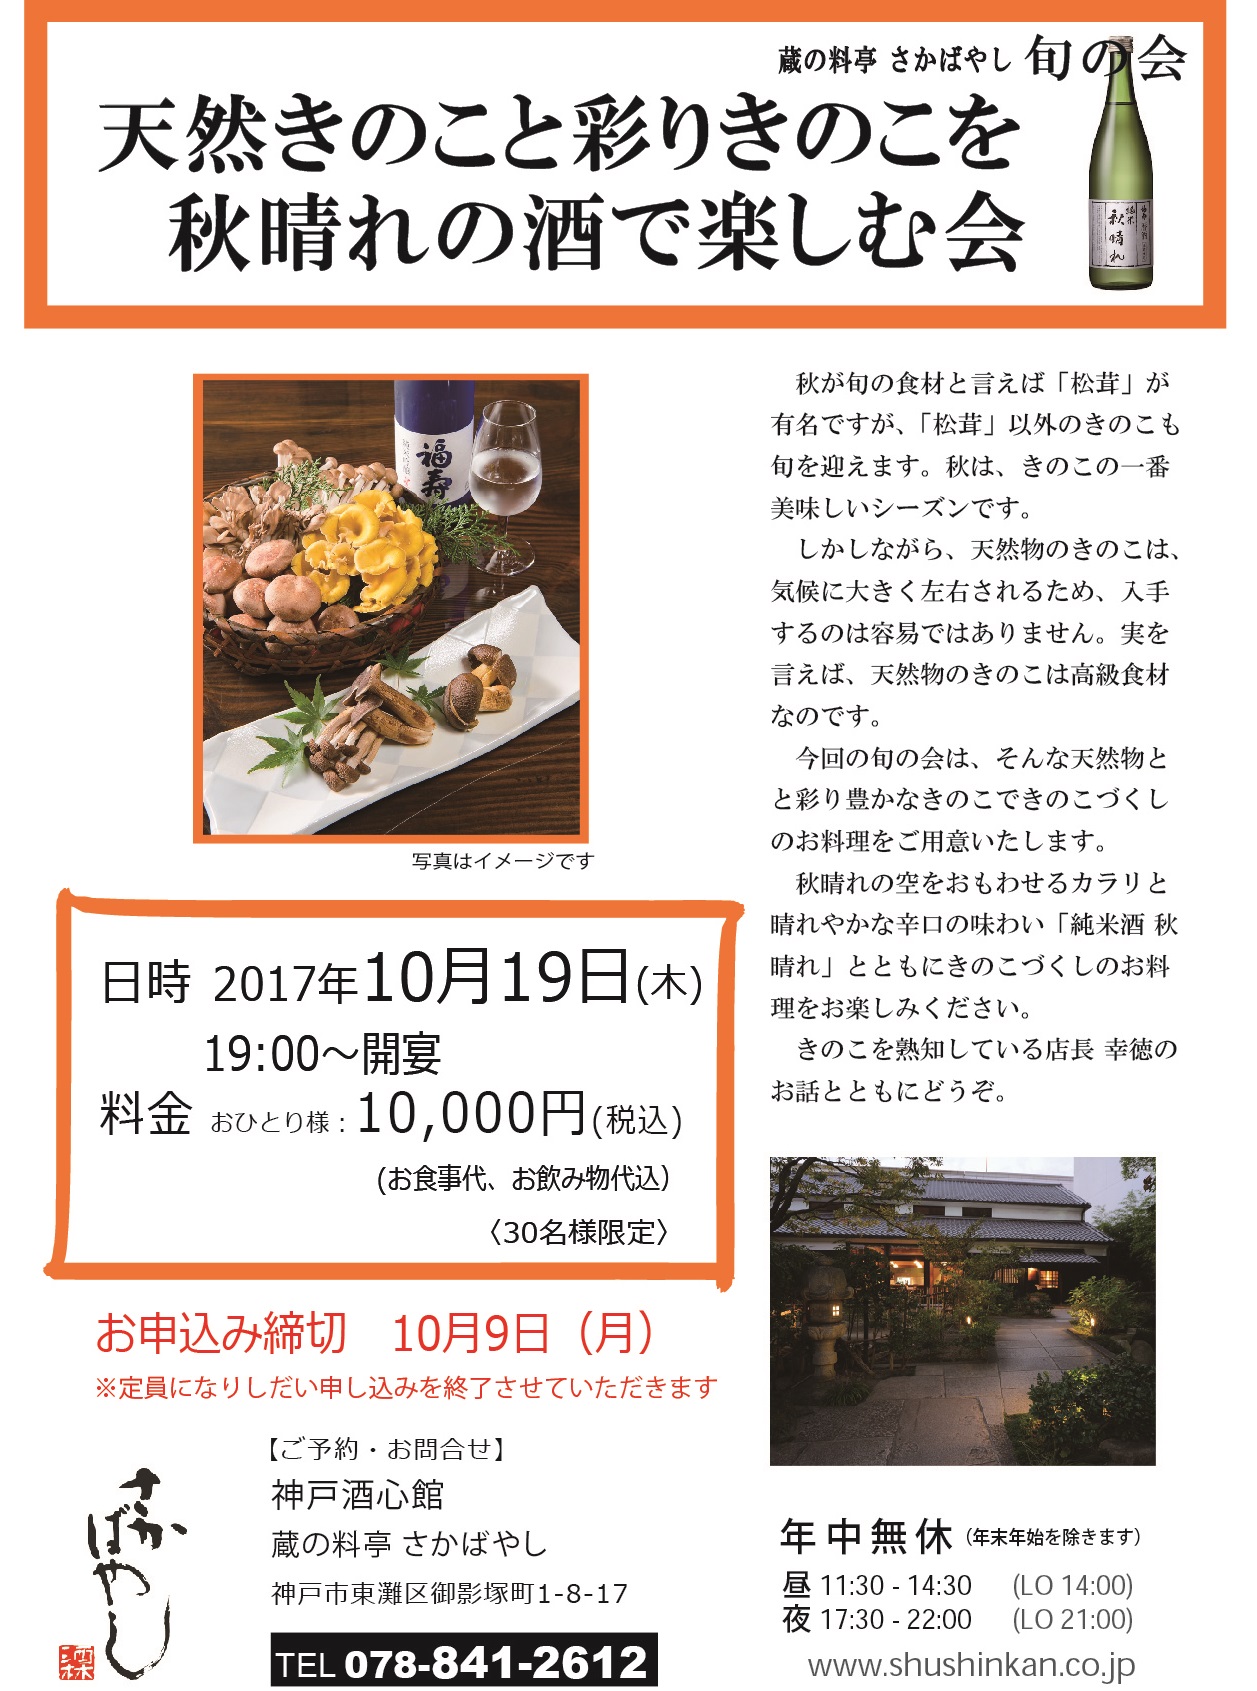 2017 10 19 天然きのこと秋晴れの酒できのこづくしの料理を味わう会 新着情報 神戸酒心館